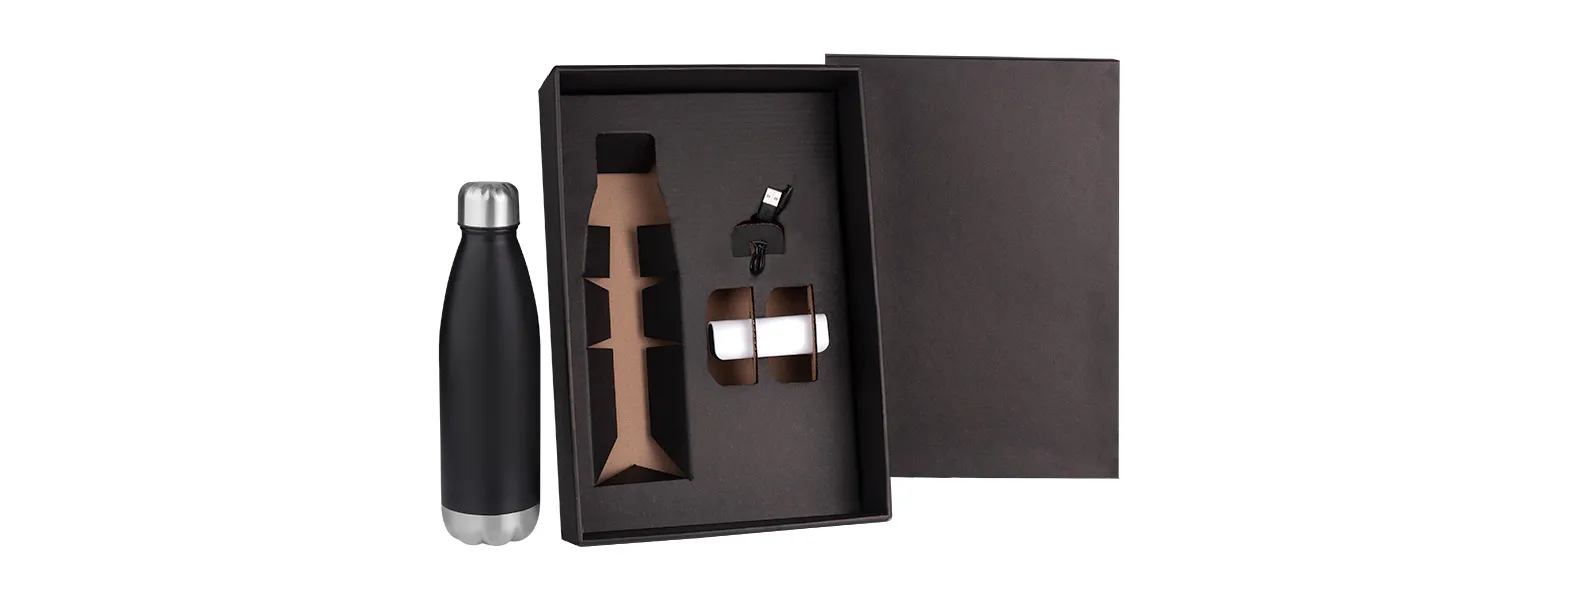 Kit garrafa e carregador portátil. Composto por garrafa em aço inox preta com tampa rosqueável e carregador portátil.